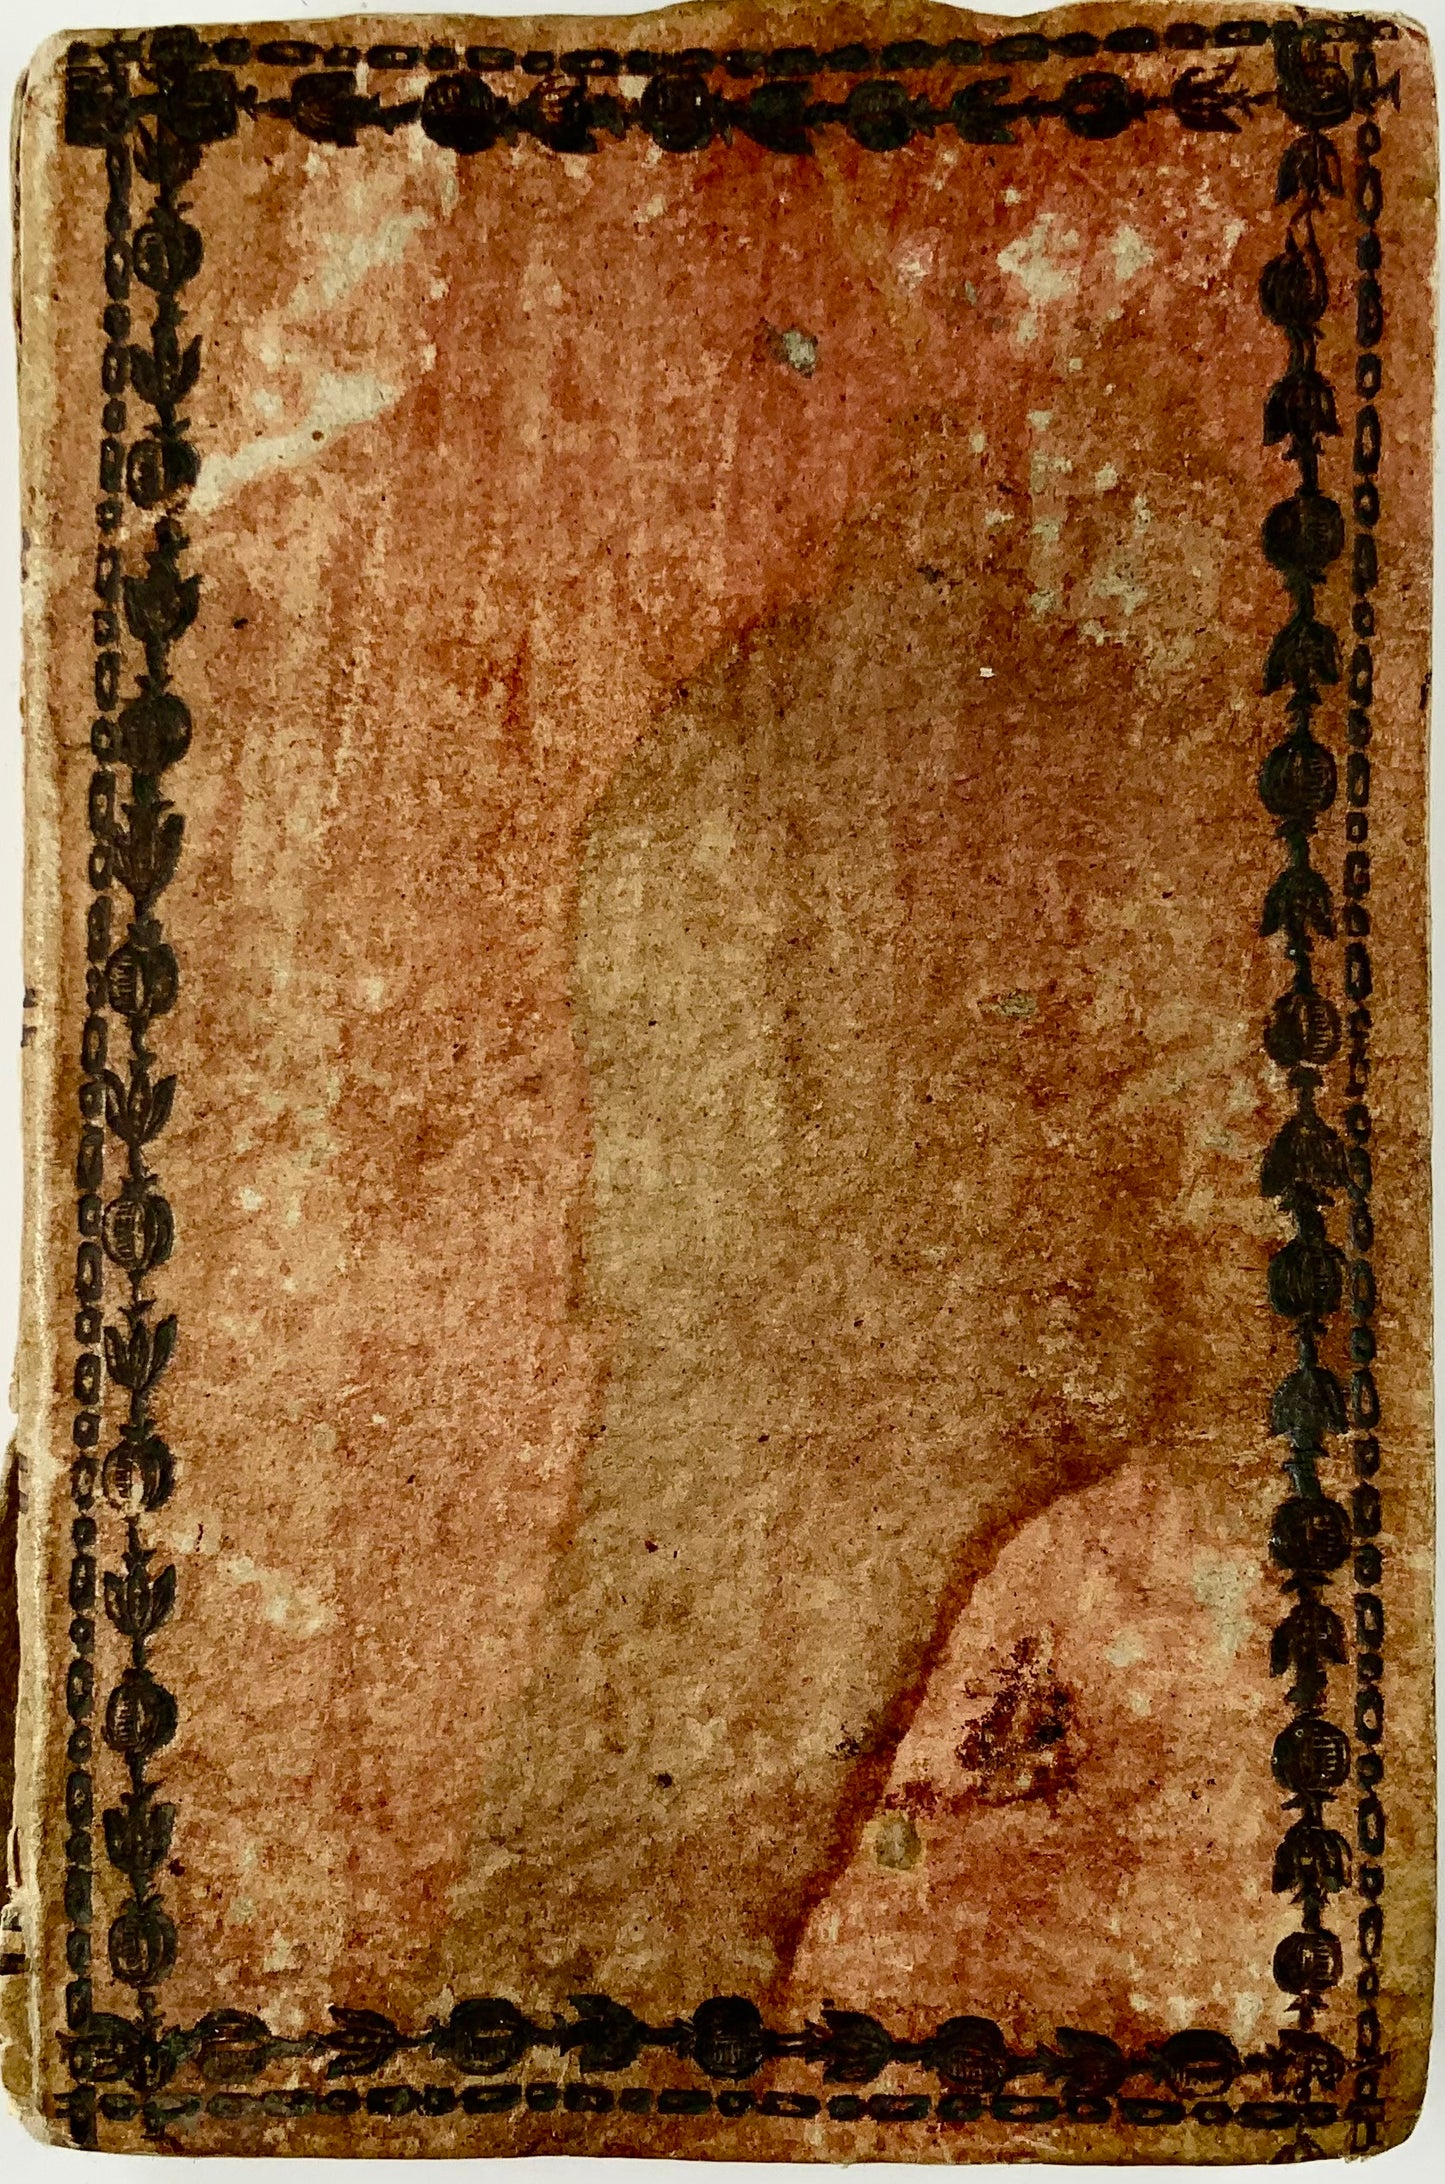 1814 Astronomical Almanac, Palmaverde, Il Corso delle Stelle, woodcuts